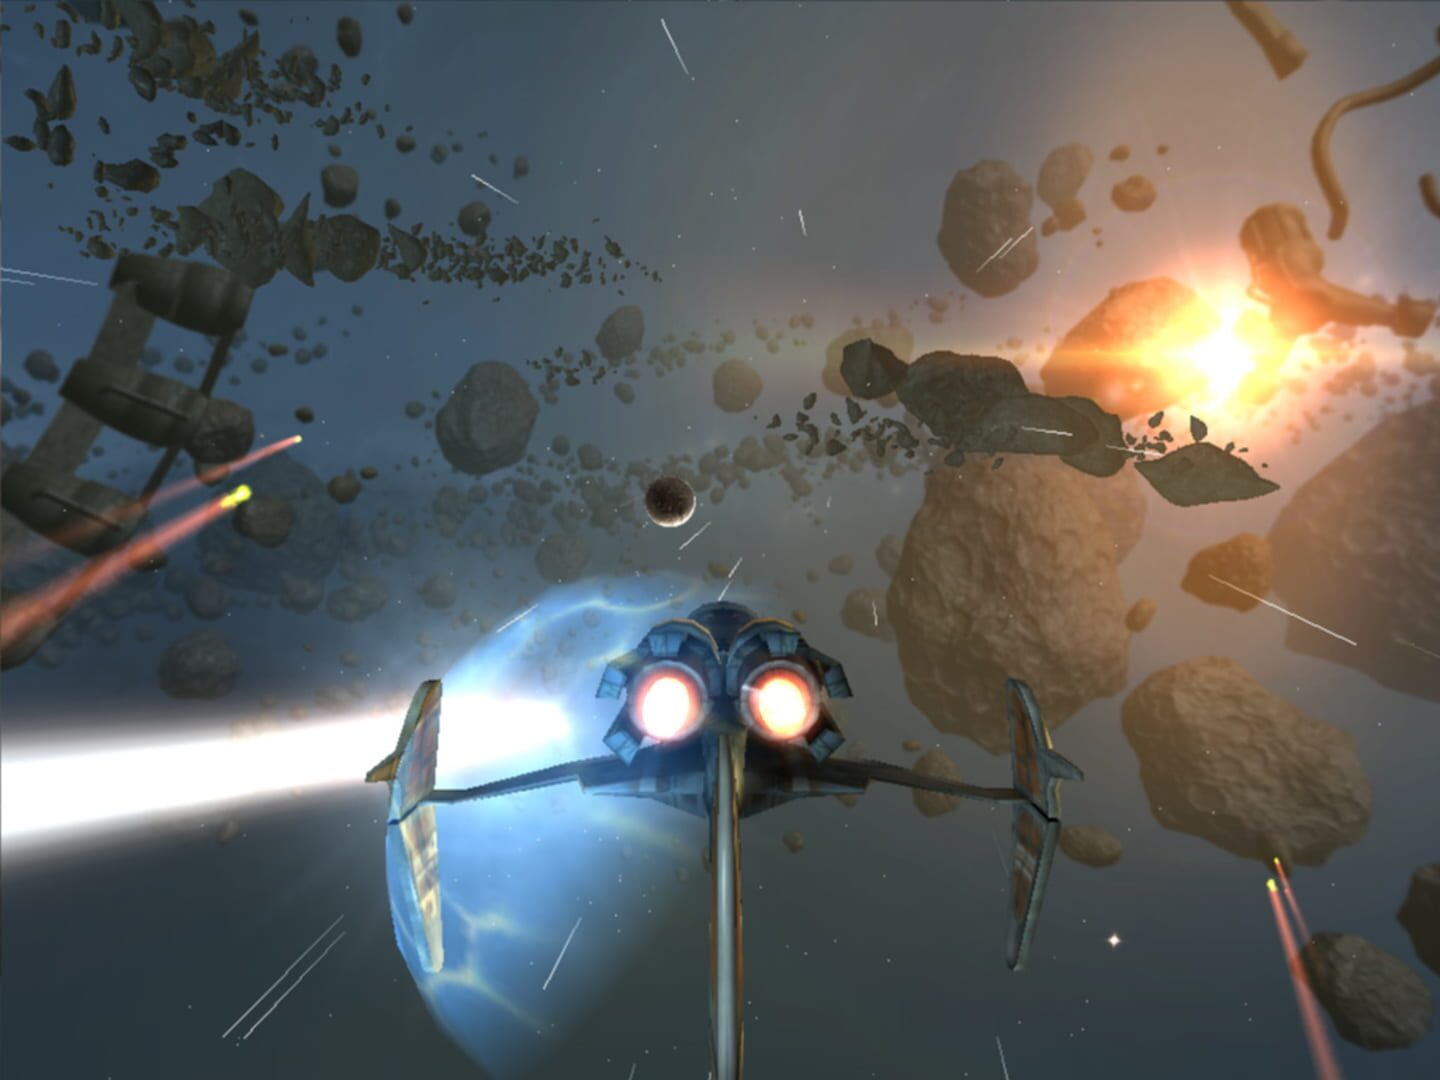 Strike Wing: Raptor Rising screenshots